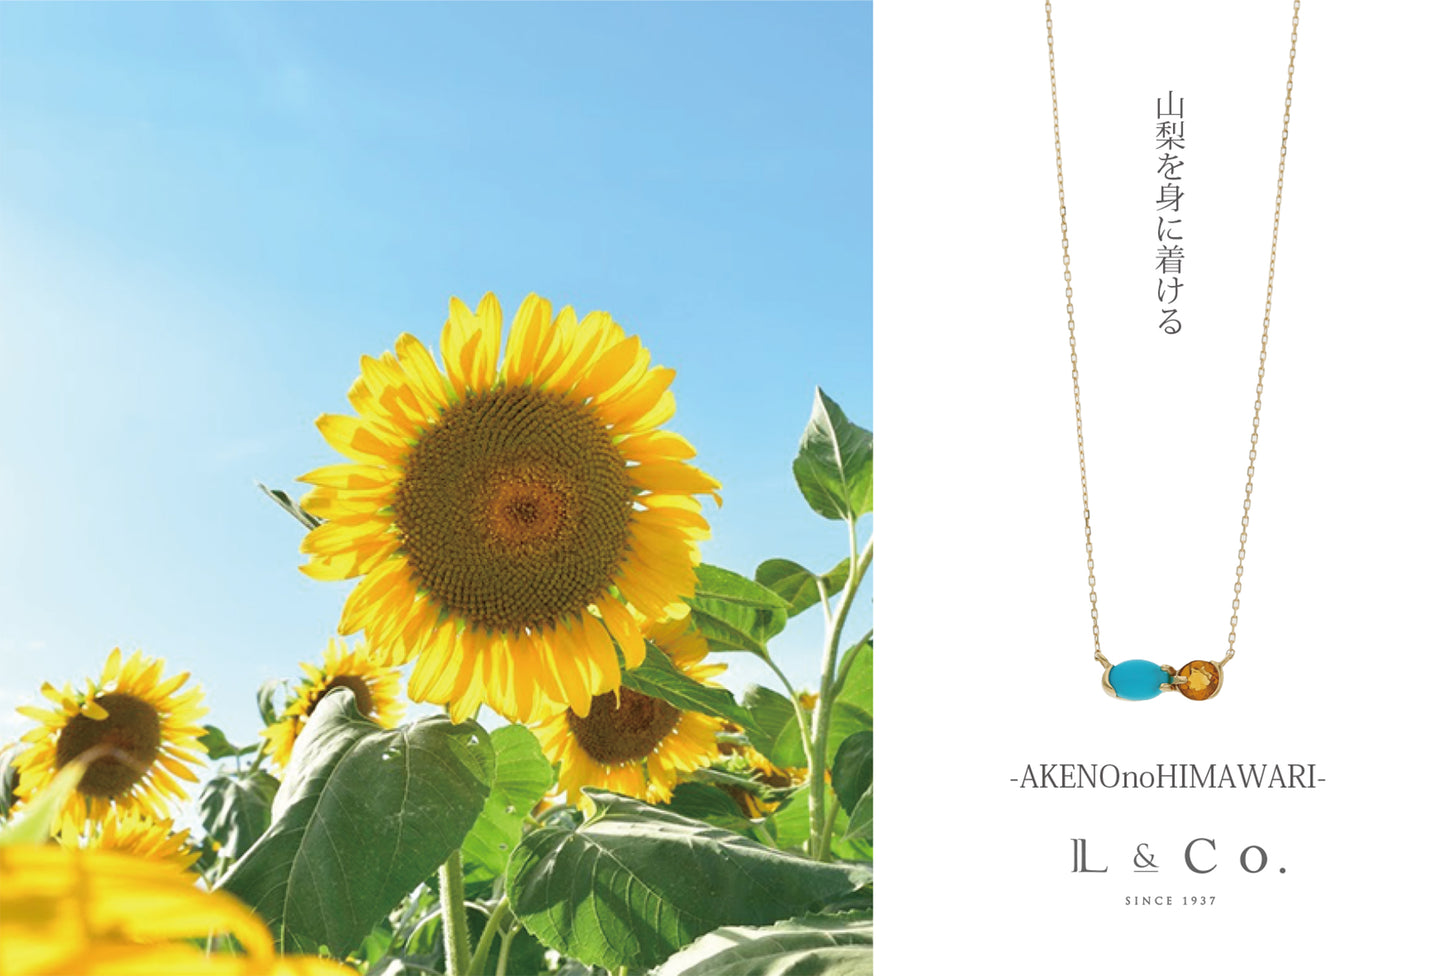 [Made-to-order] K10 Yamanashi necklace ｜60-8659-8670